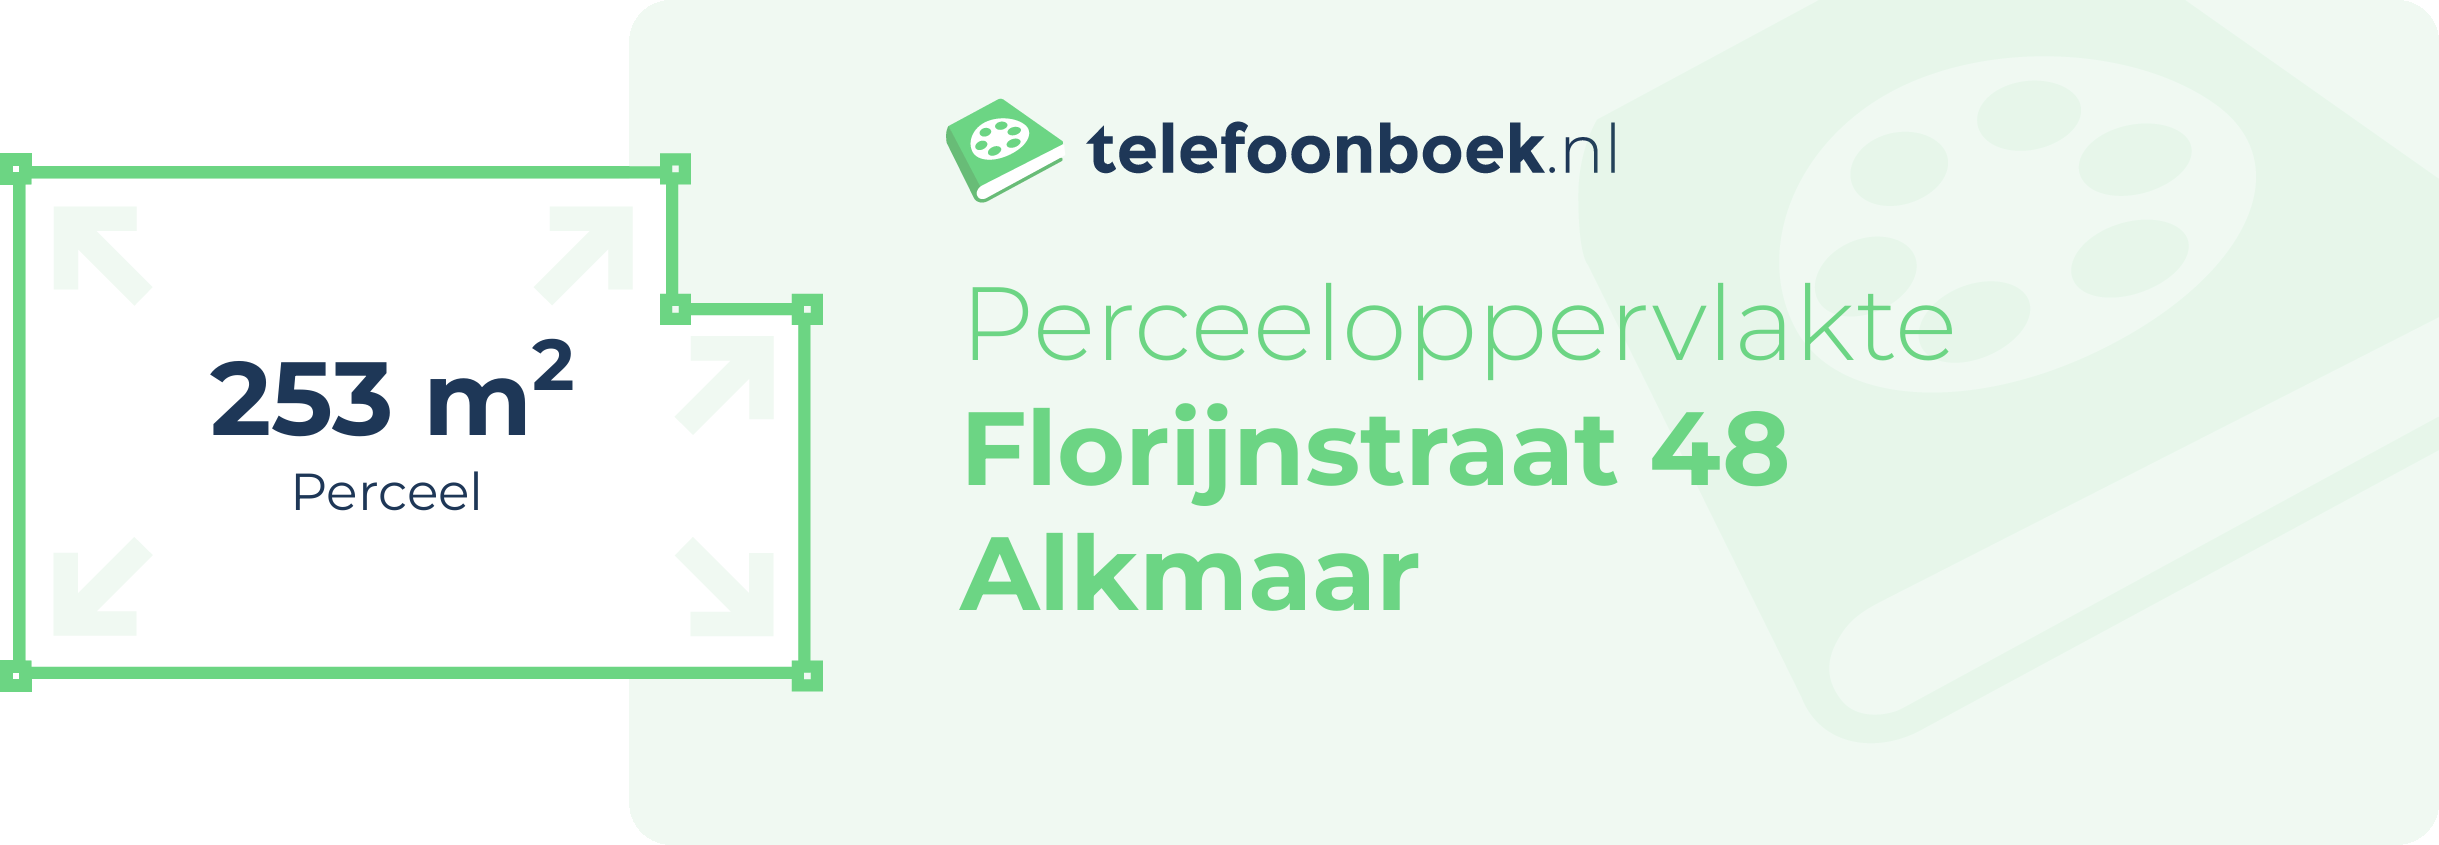 Perceeloppervlakte Florijnstraat 48 Alkmaar